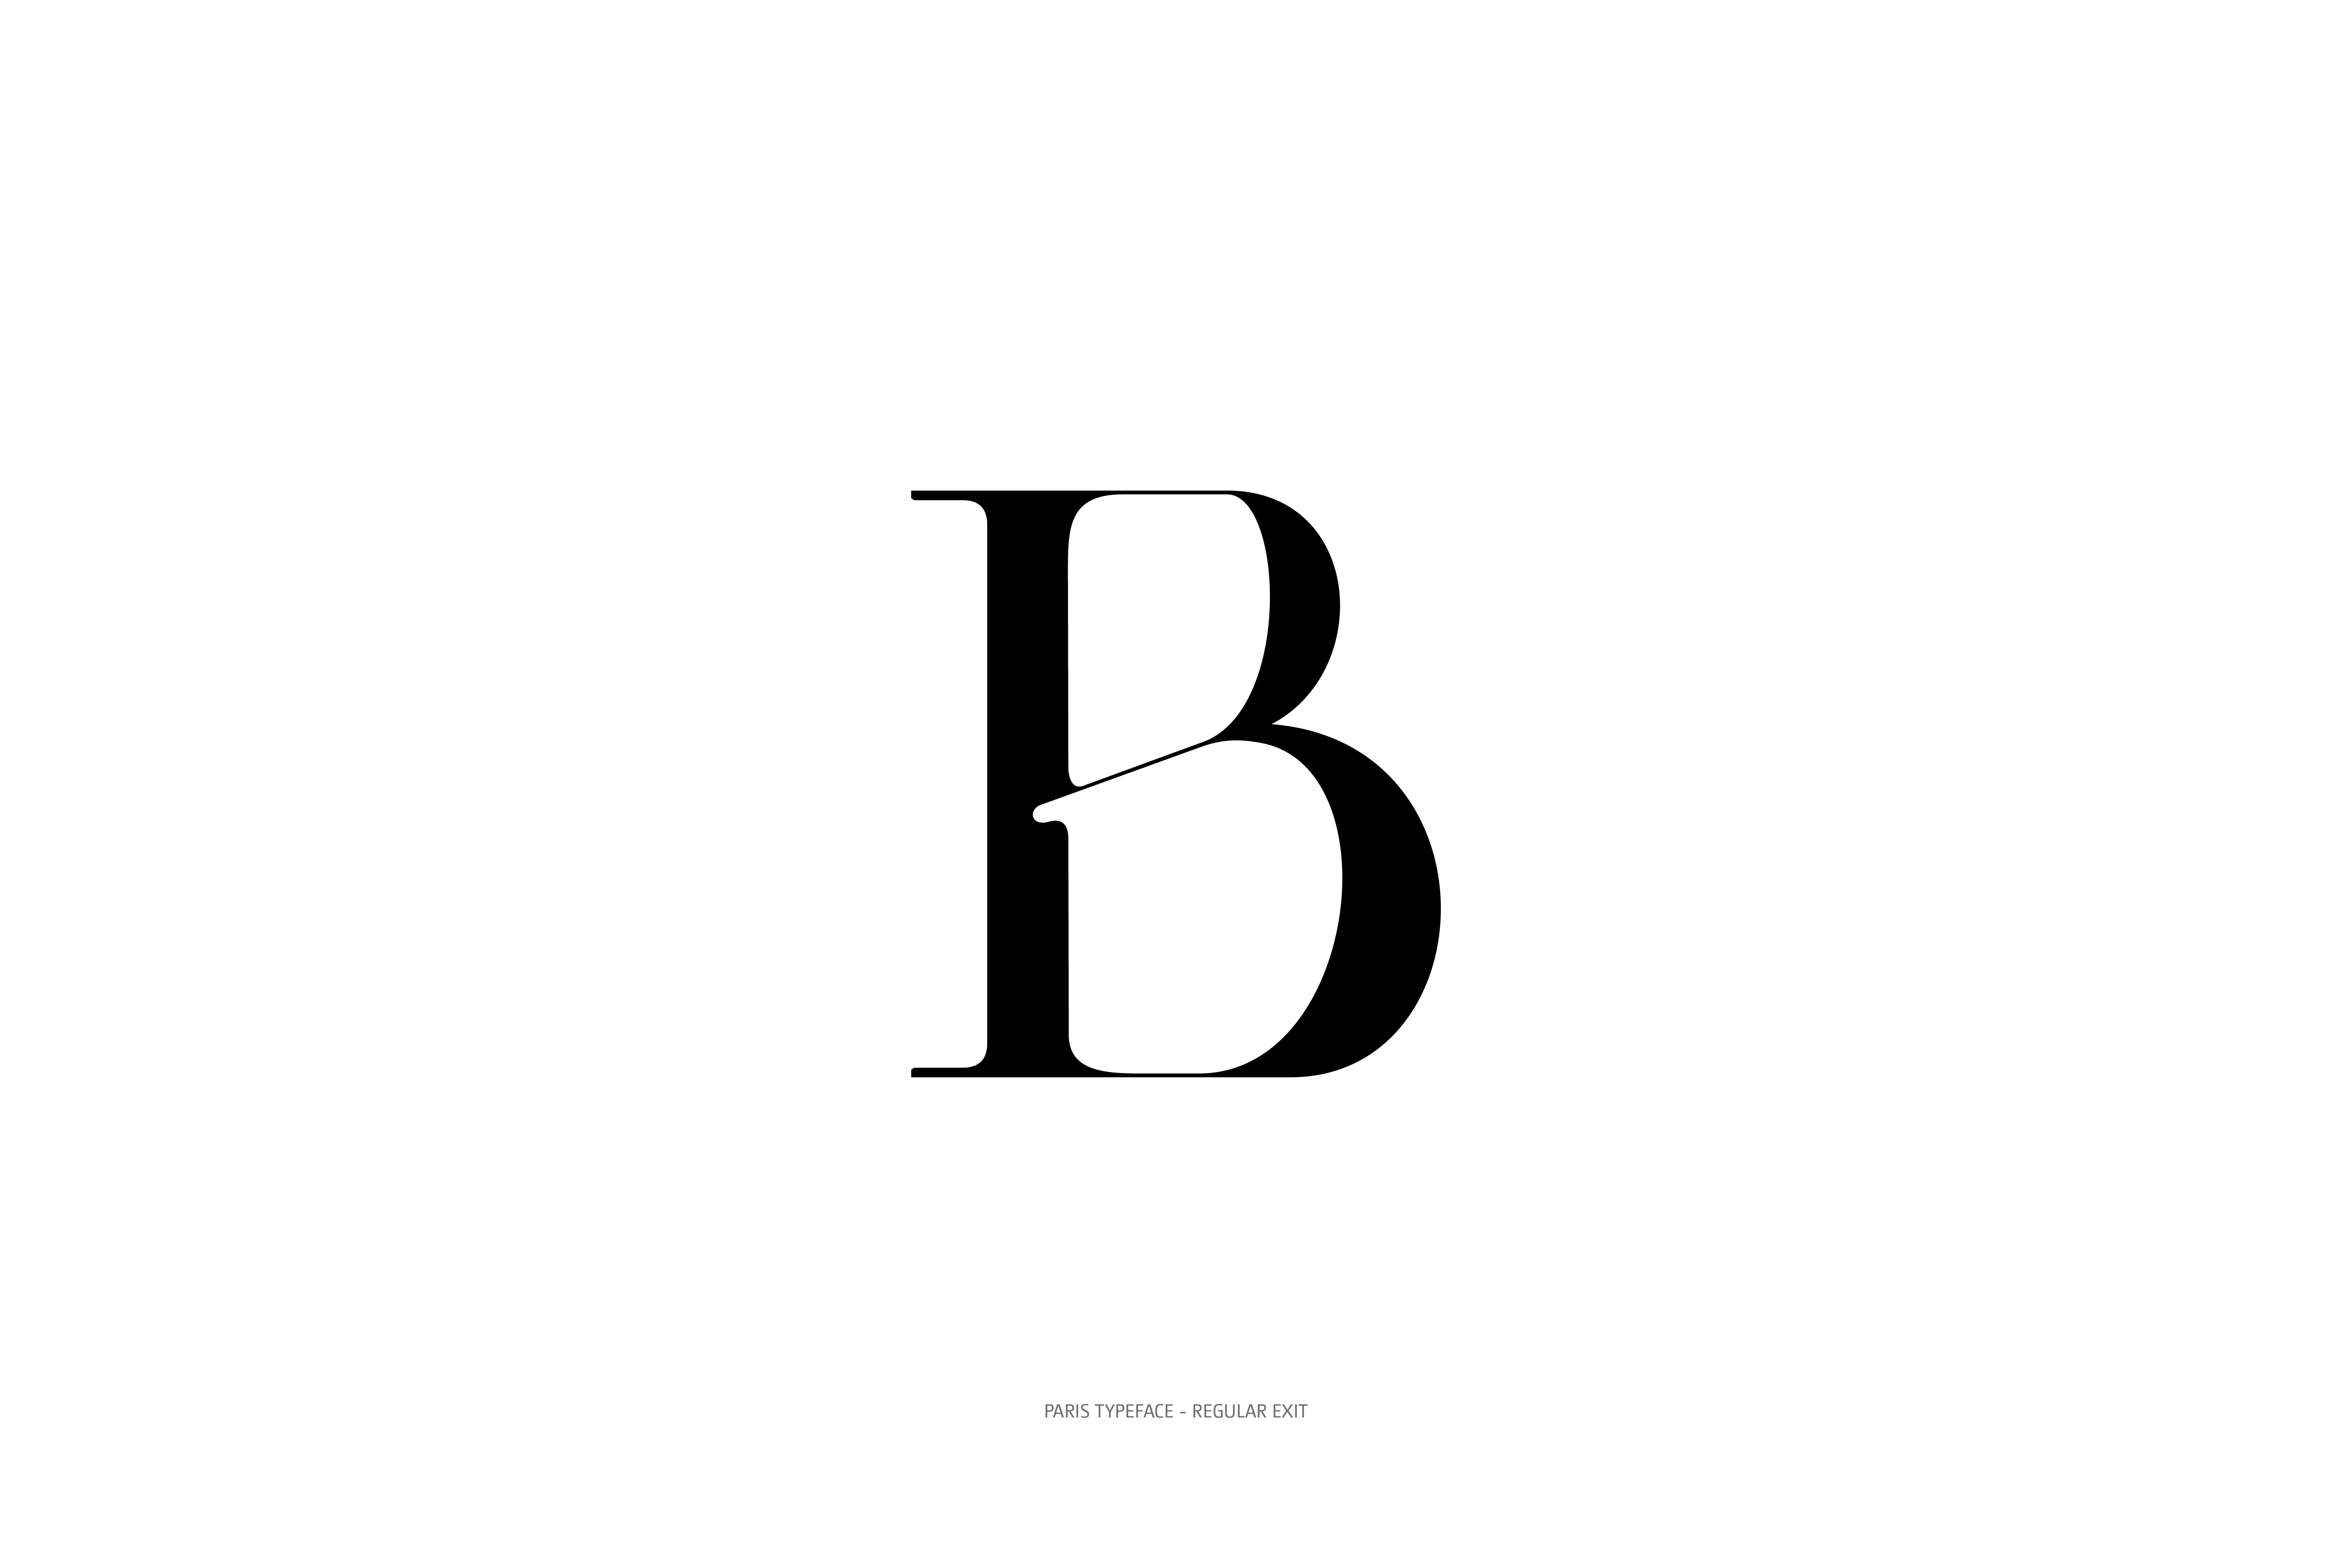 Paris Typeface Regular Exit B